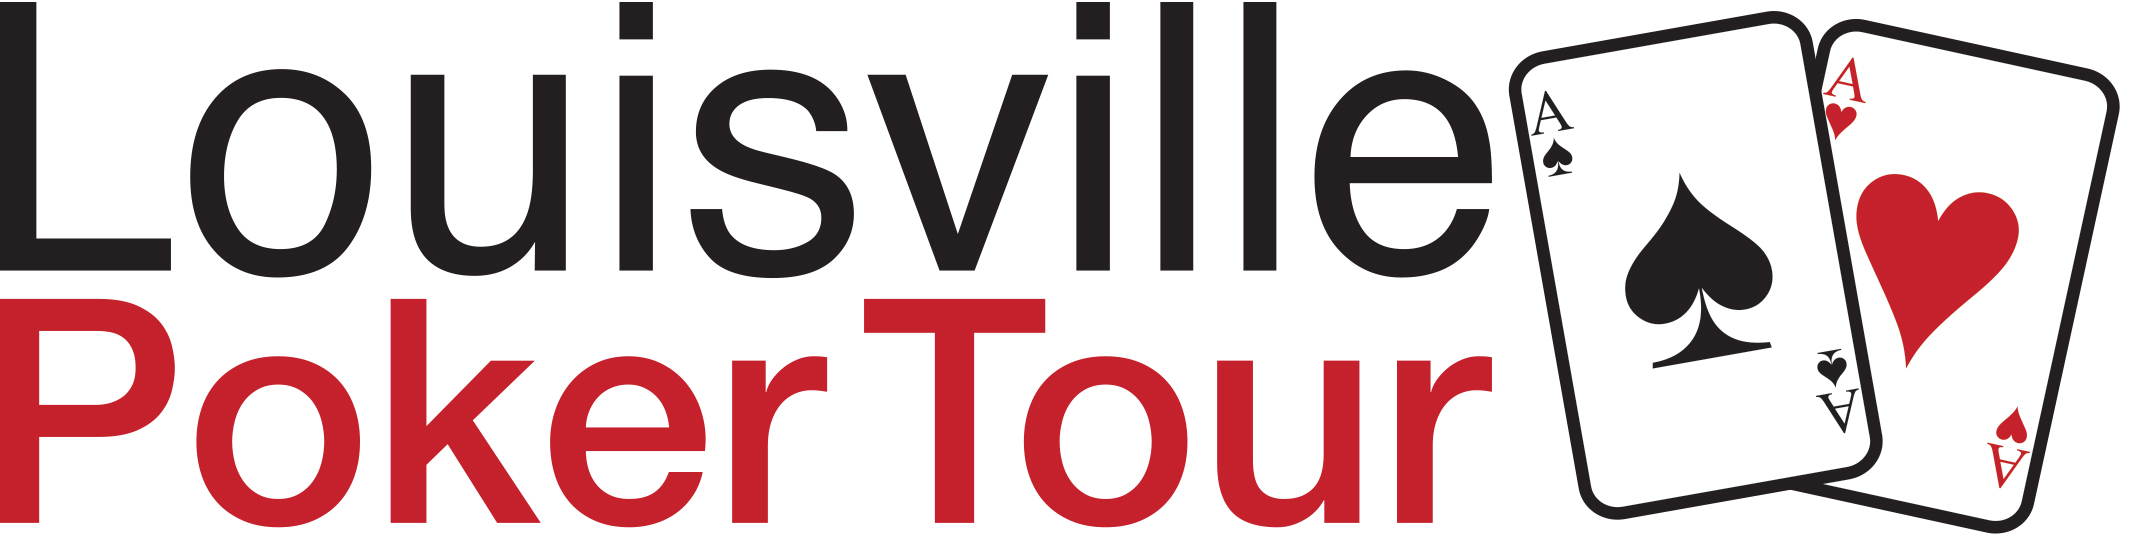 Louisville Poker Tour